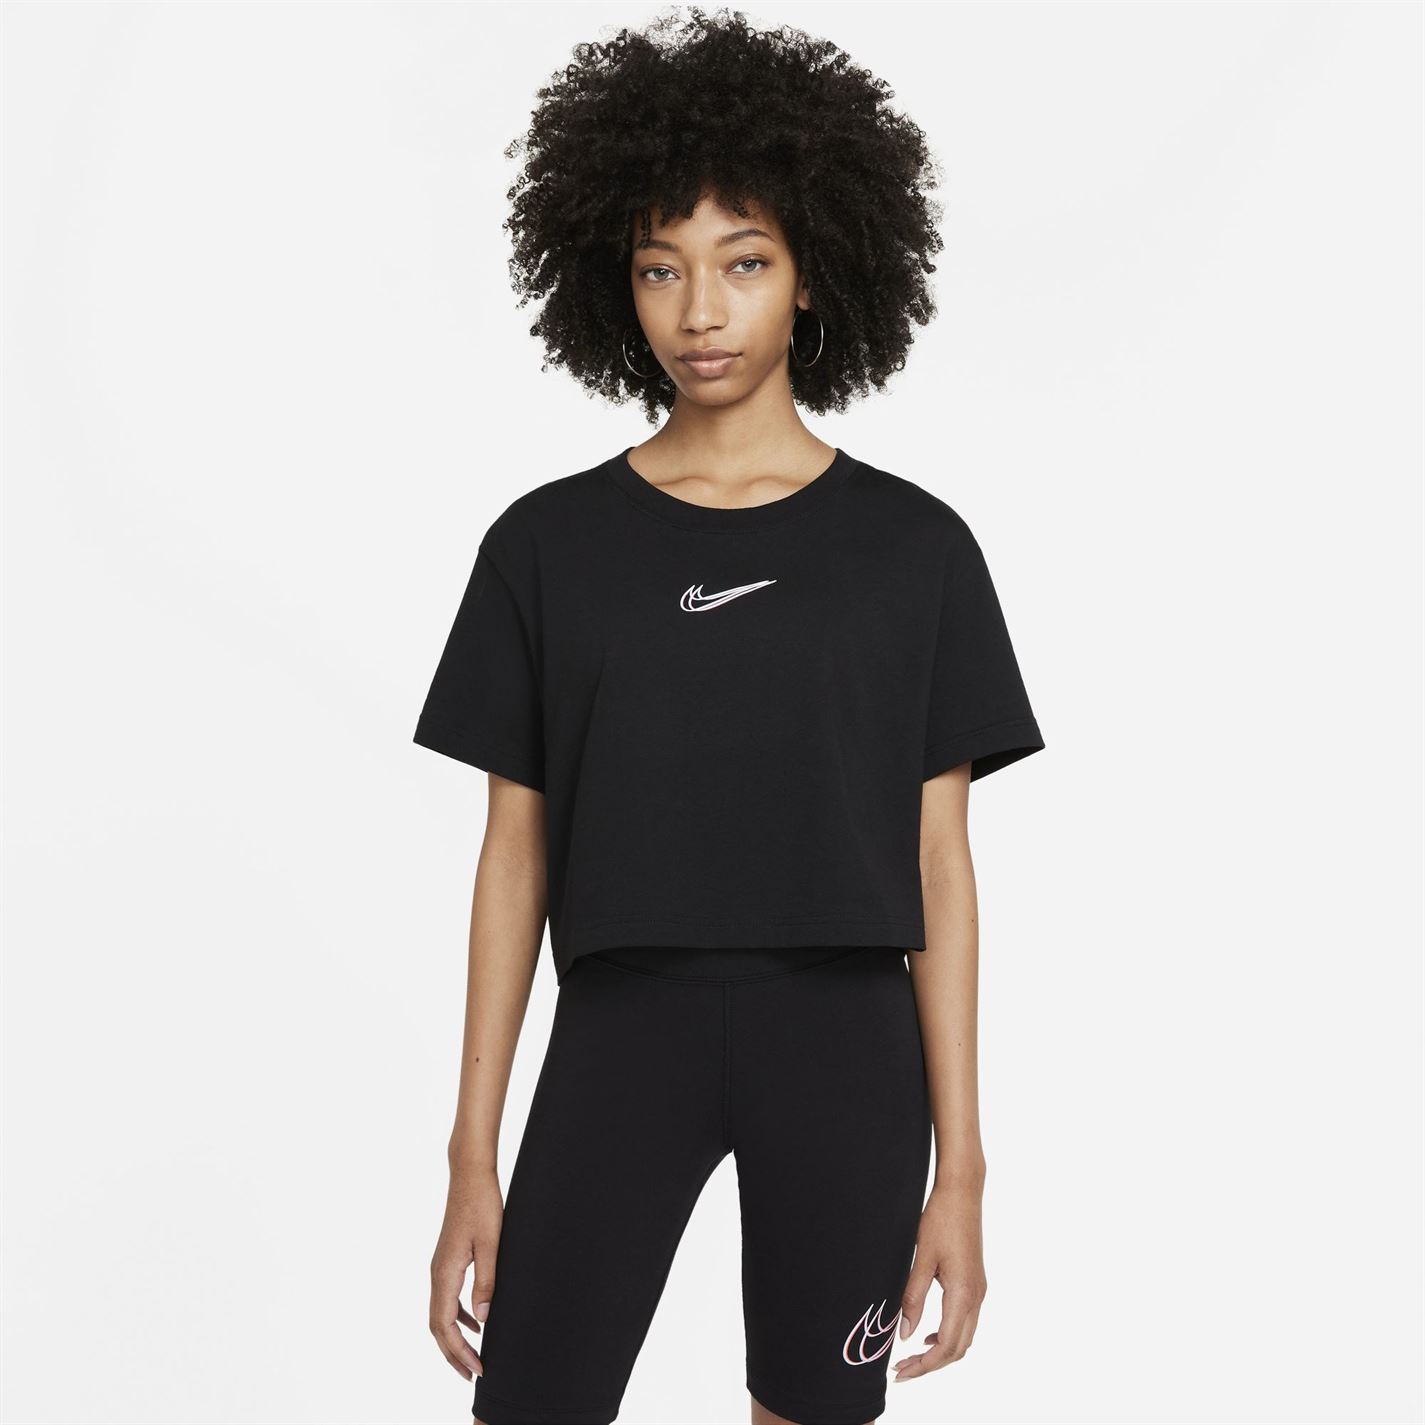 Top scurt Nike Print negru